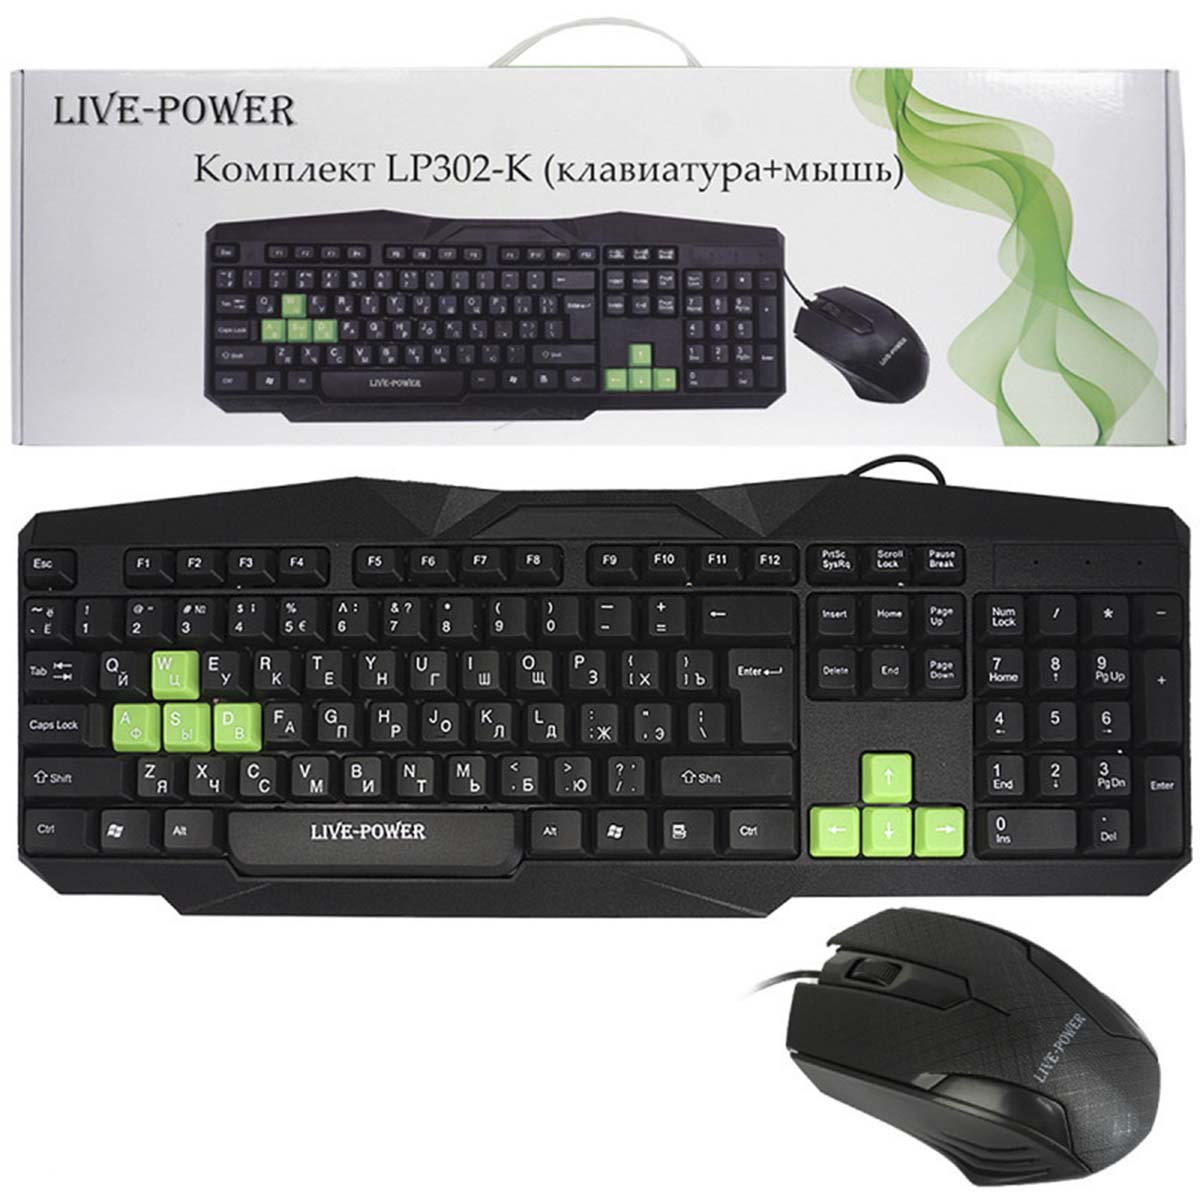 Игровой набор Live-Power LP302-K, клавиатура, мышь, цвет черно зеленый